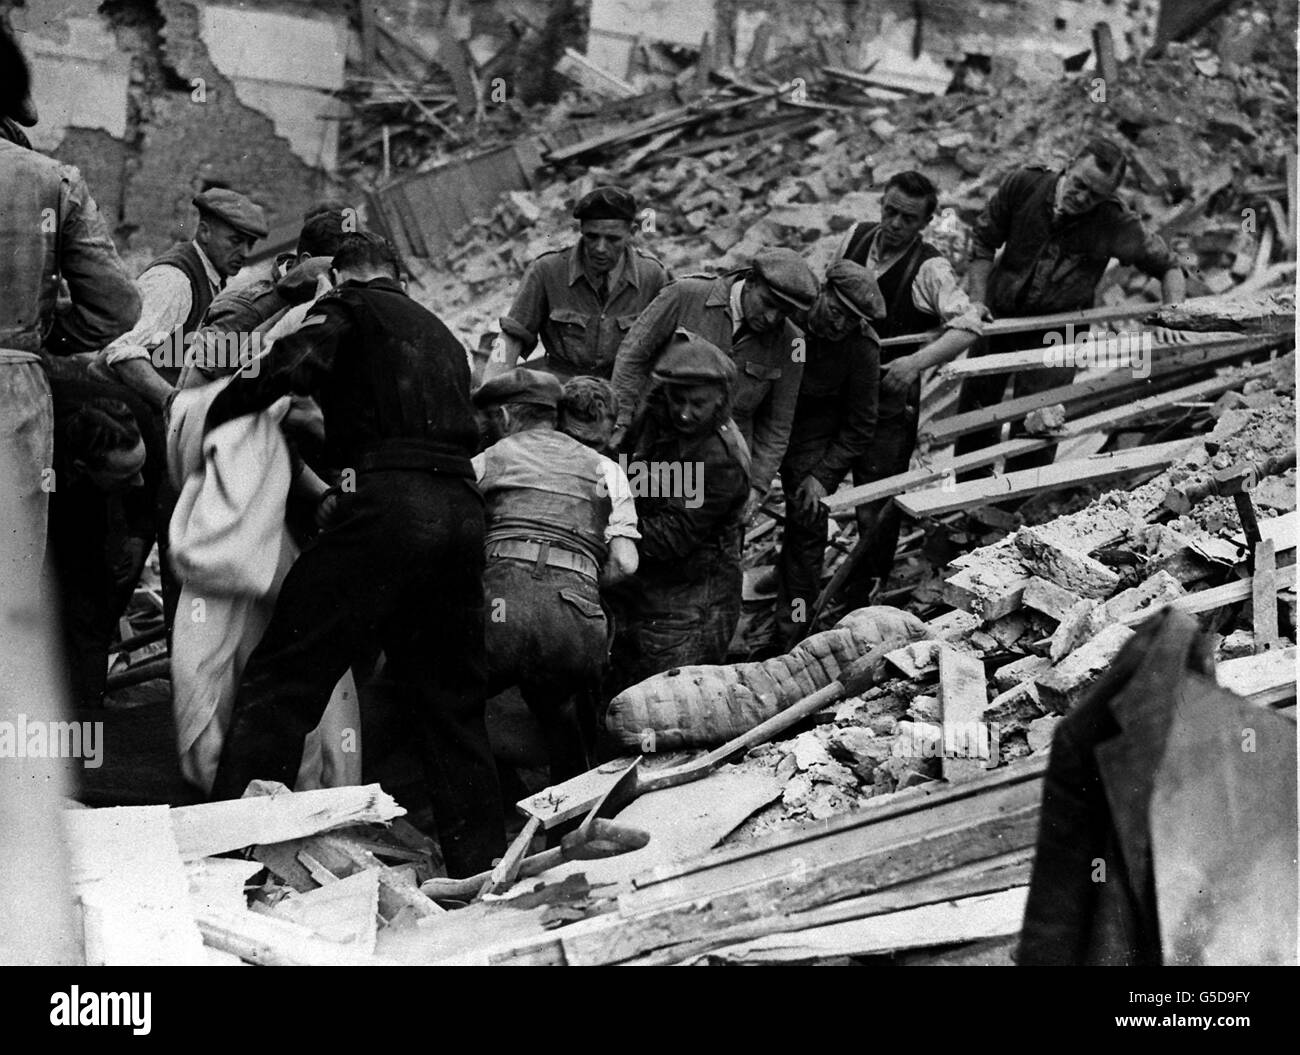 El AIRE ALEMÁN RAID 1943: Después de horas de trabajo duro un hombre es liberado de debajo de una gran pila de escombros después de una incursión nocturna por la Luftwaffe en el área de Londres. Foto de la colección de la Segunda Guerra Mundial de PA. Foto de stock